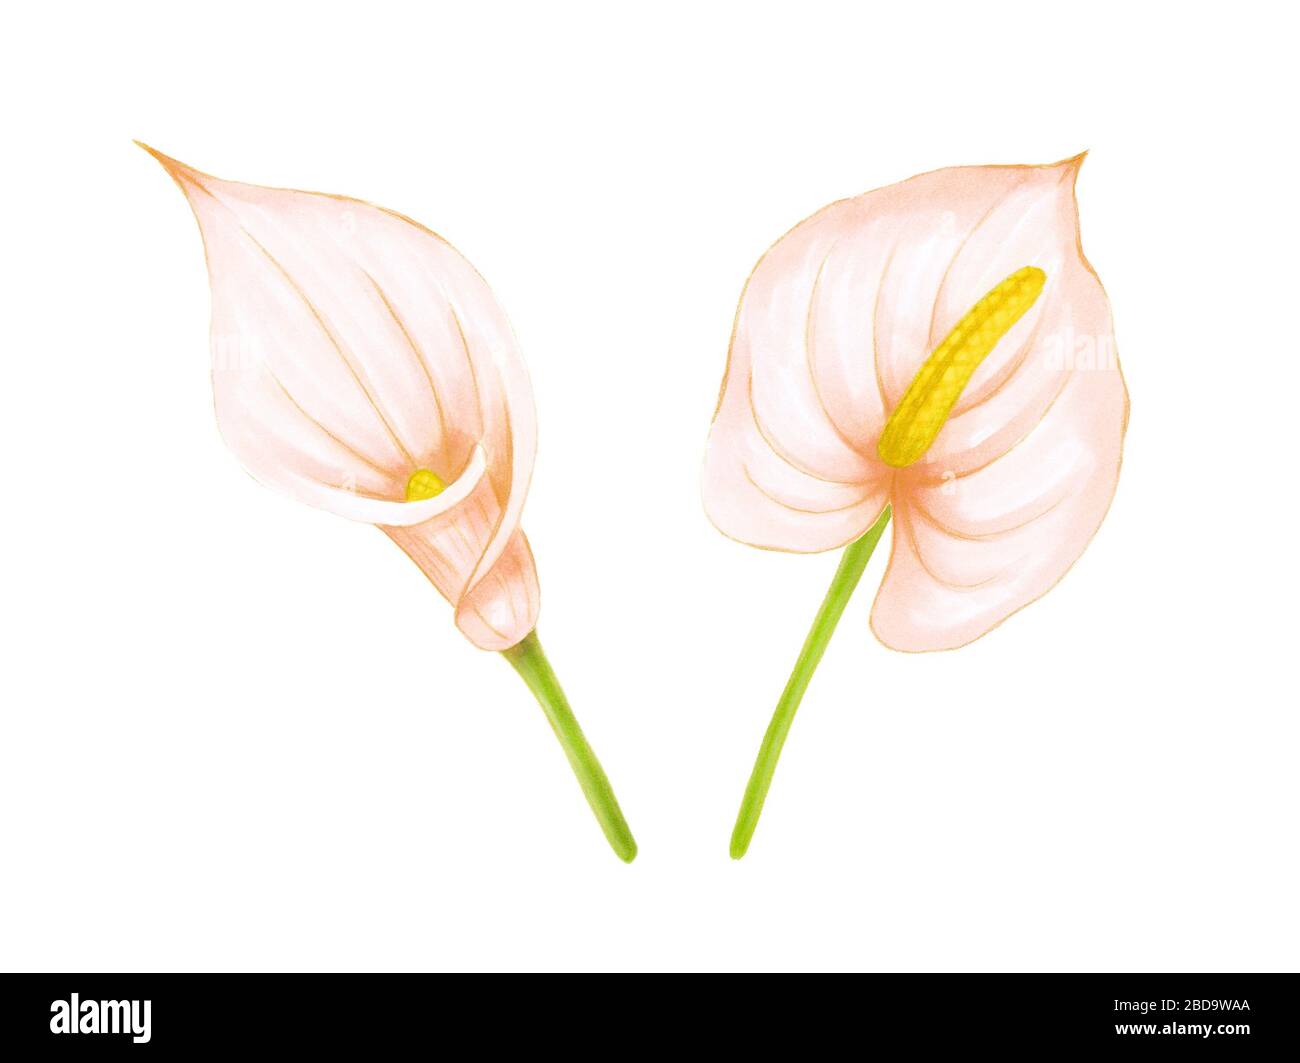 Jeu de fleurs douces rose-beige à dessin manuel anthurium et calla nénuphars sur fond blanc. Élément exotique décoratif pour cartes d'invitation, textile Banque D'Images